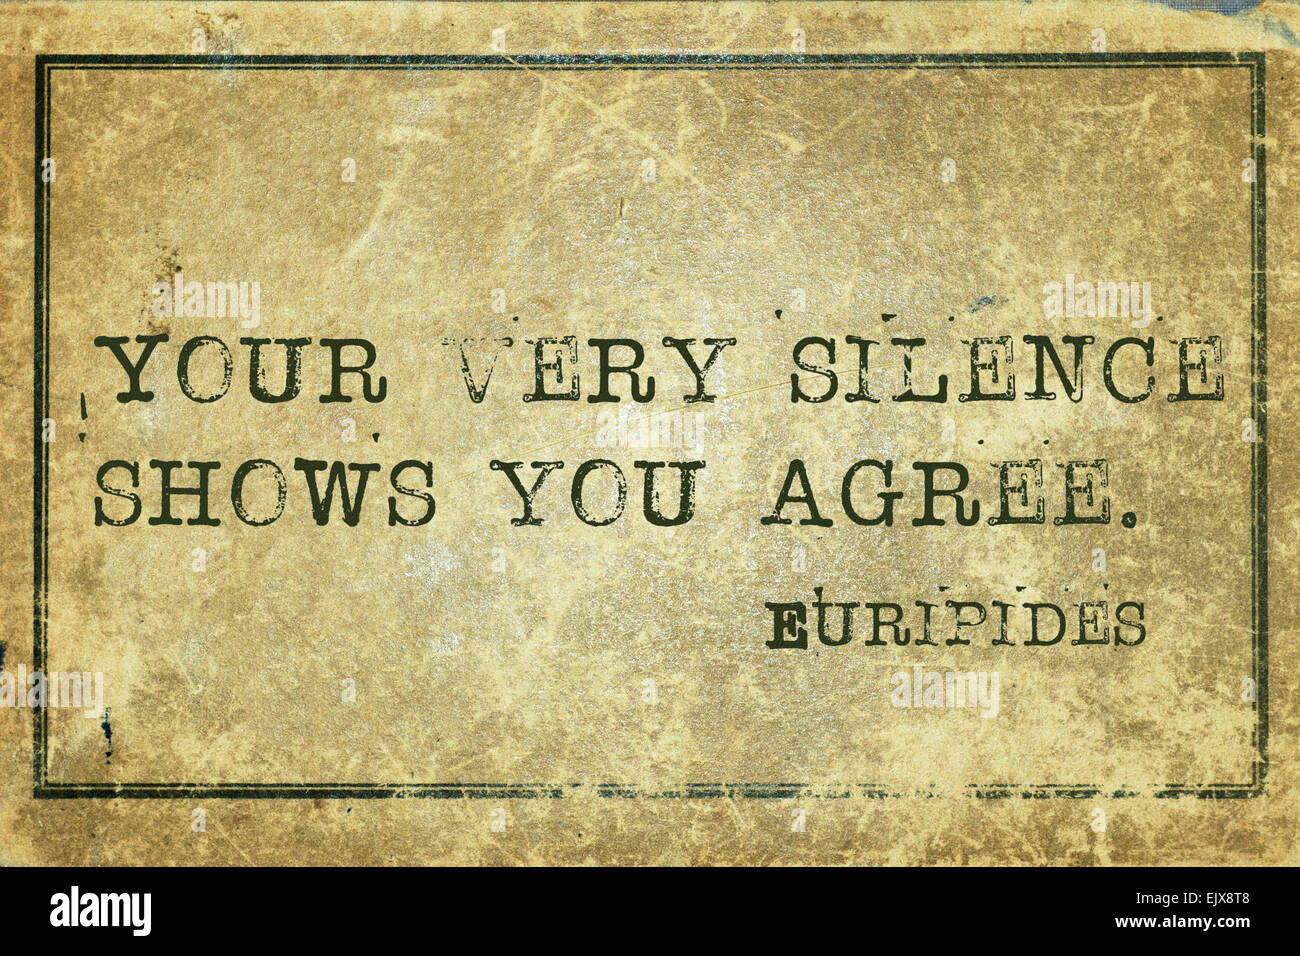 Su silencio se muestra de acuerdo - antiguo filósofo griego Eurípides quote impreso en cartón vintage grunge Foto de stock